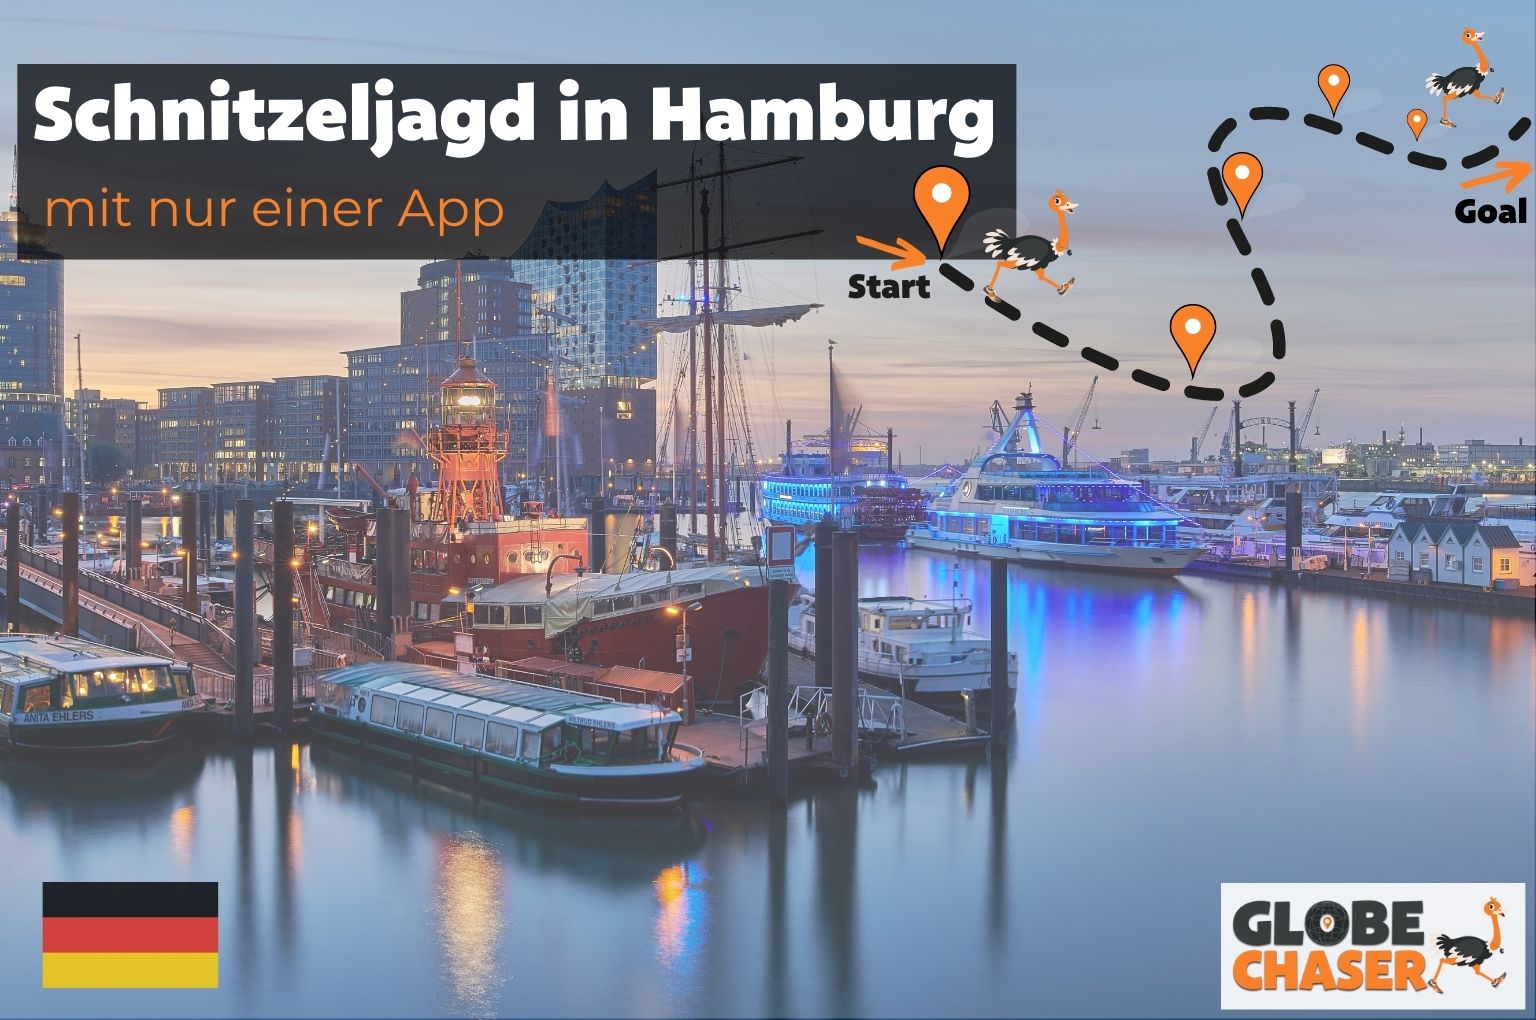 Schnitzeljagd in Hamburg mit App - Globe Chaser Erlebnisse Deutschland